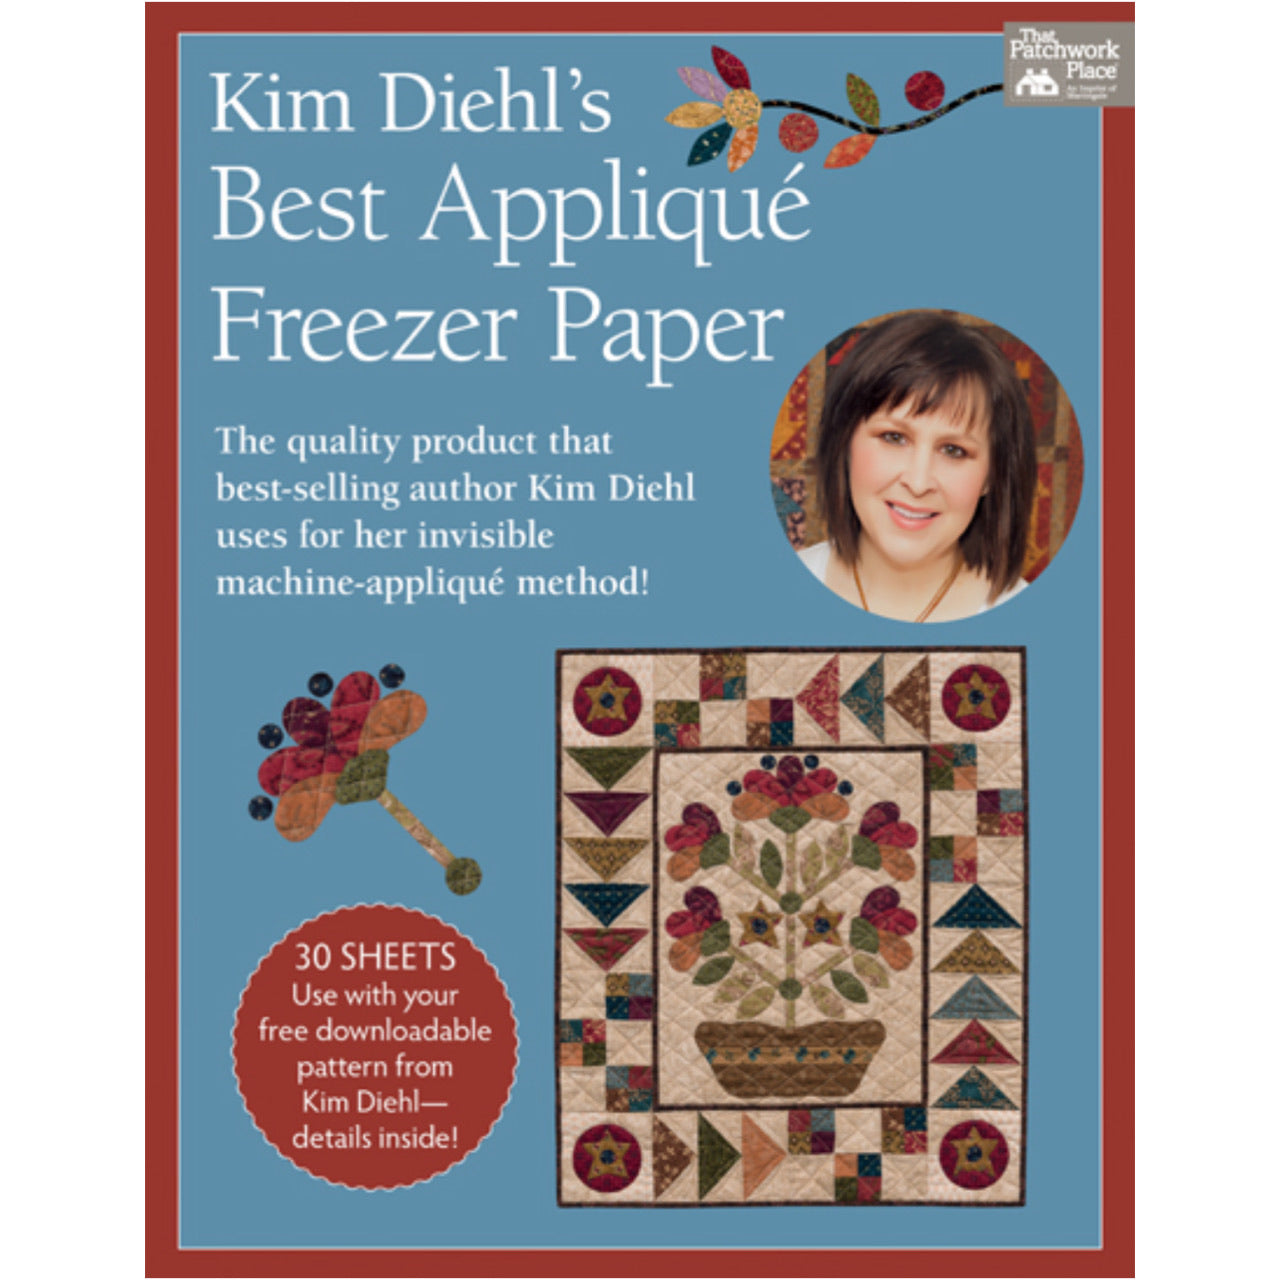 Best Applique Freezer Paper by Kim Diehl